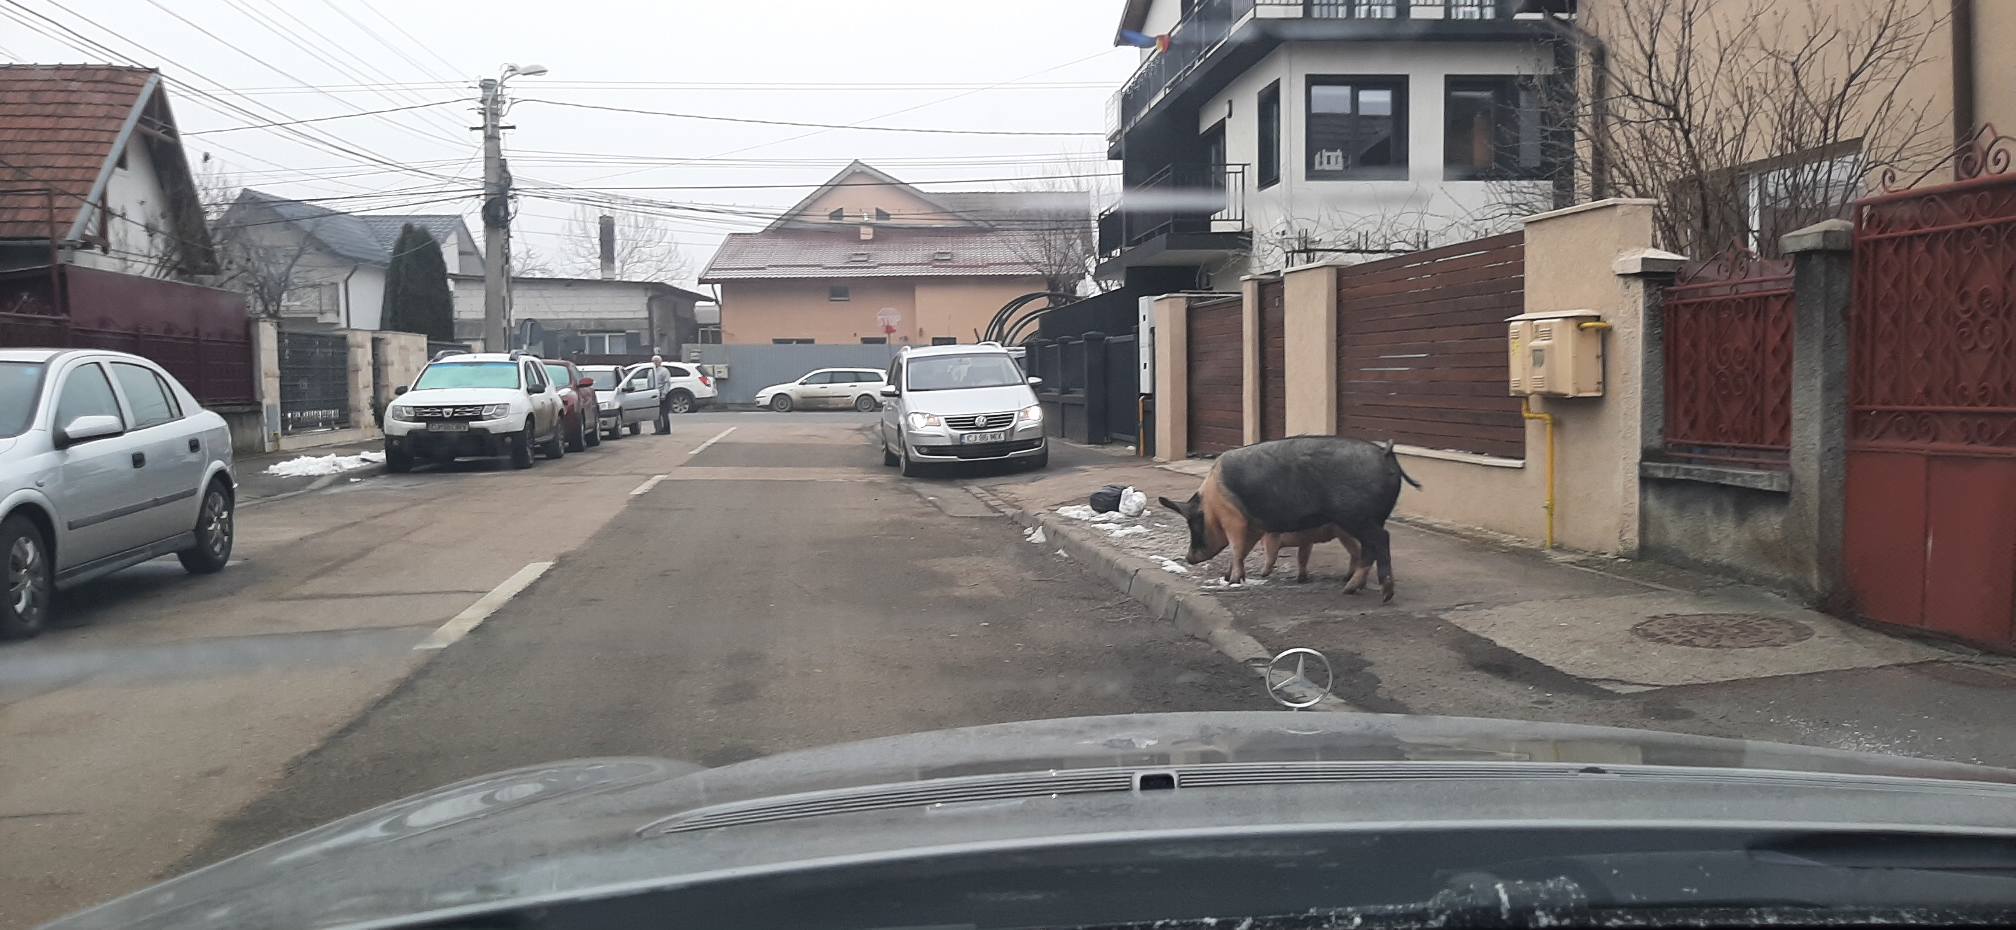 (Foto) Porci ieșiți la plimbare pe o stradă din Cluj Napoca 1